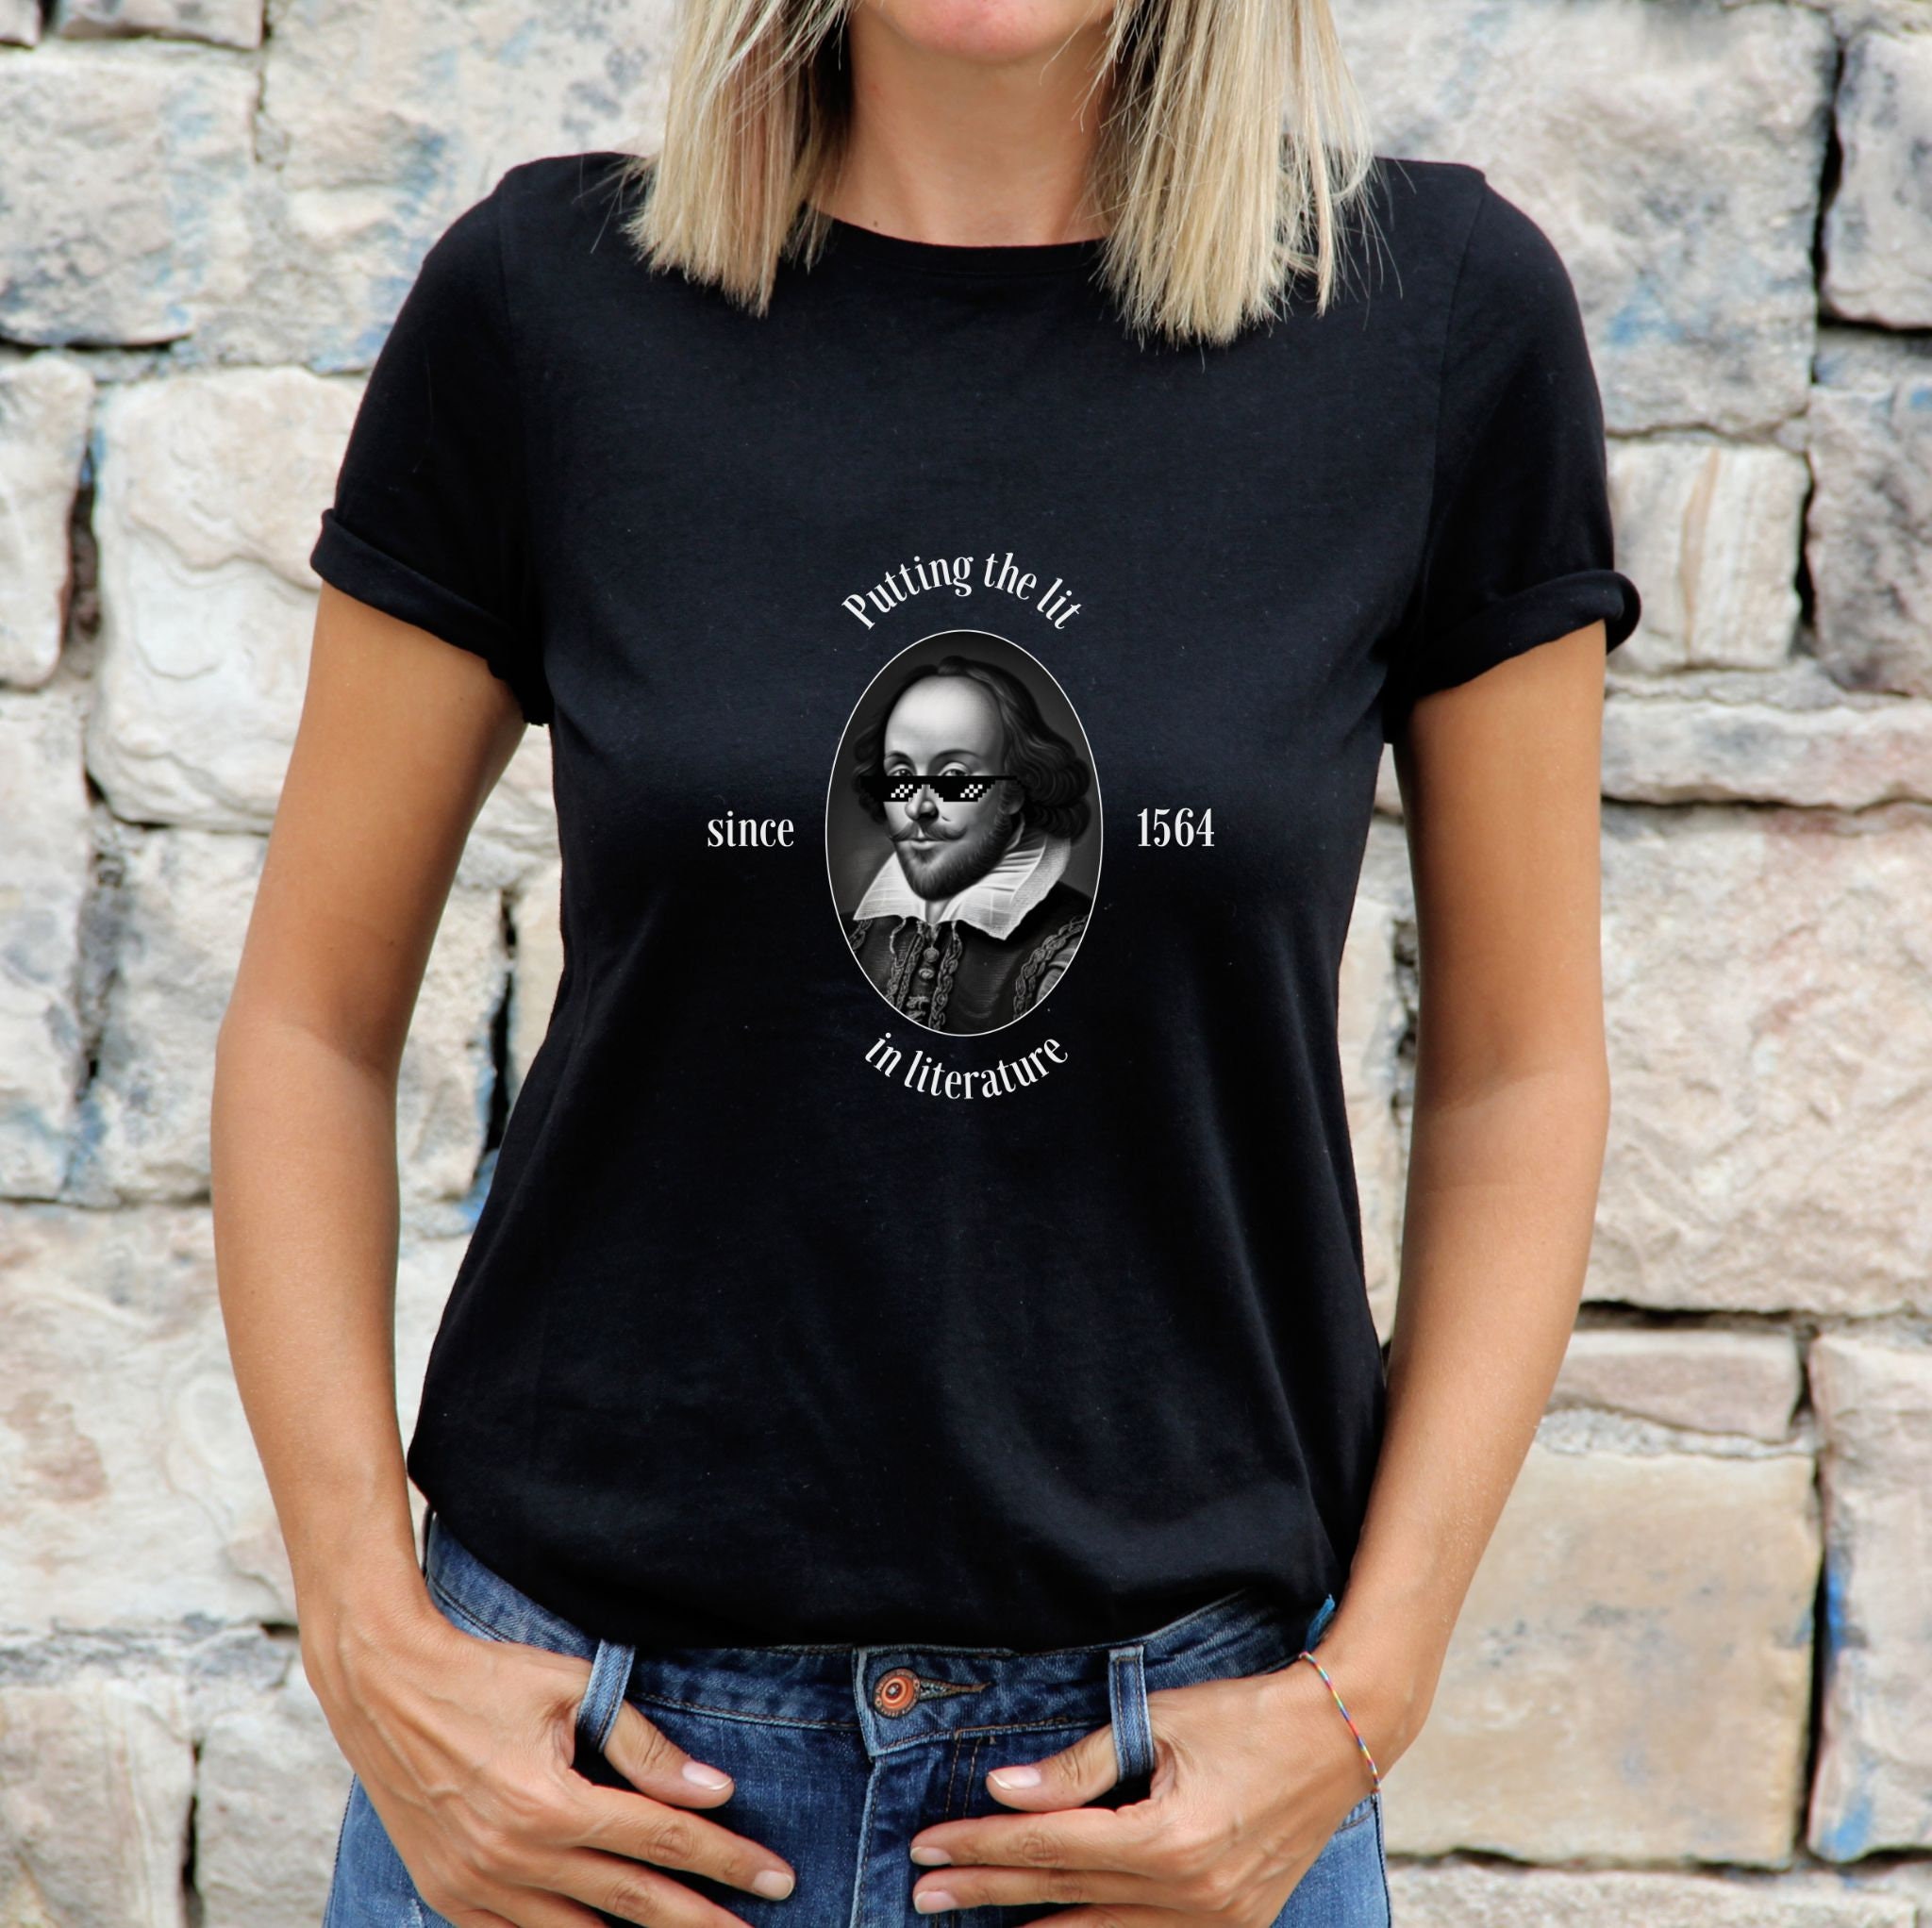 Negli occhi di chi guarda - Shakespeare - T-shirt bianca Donna